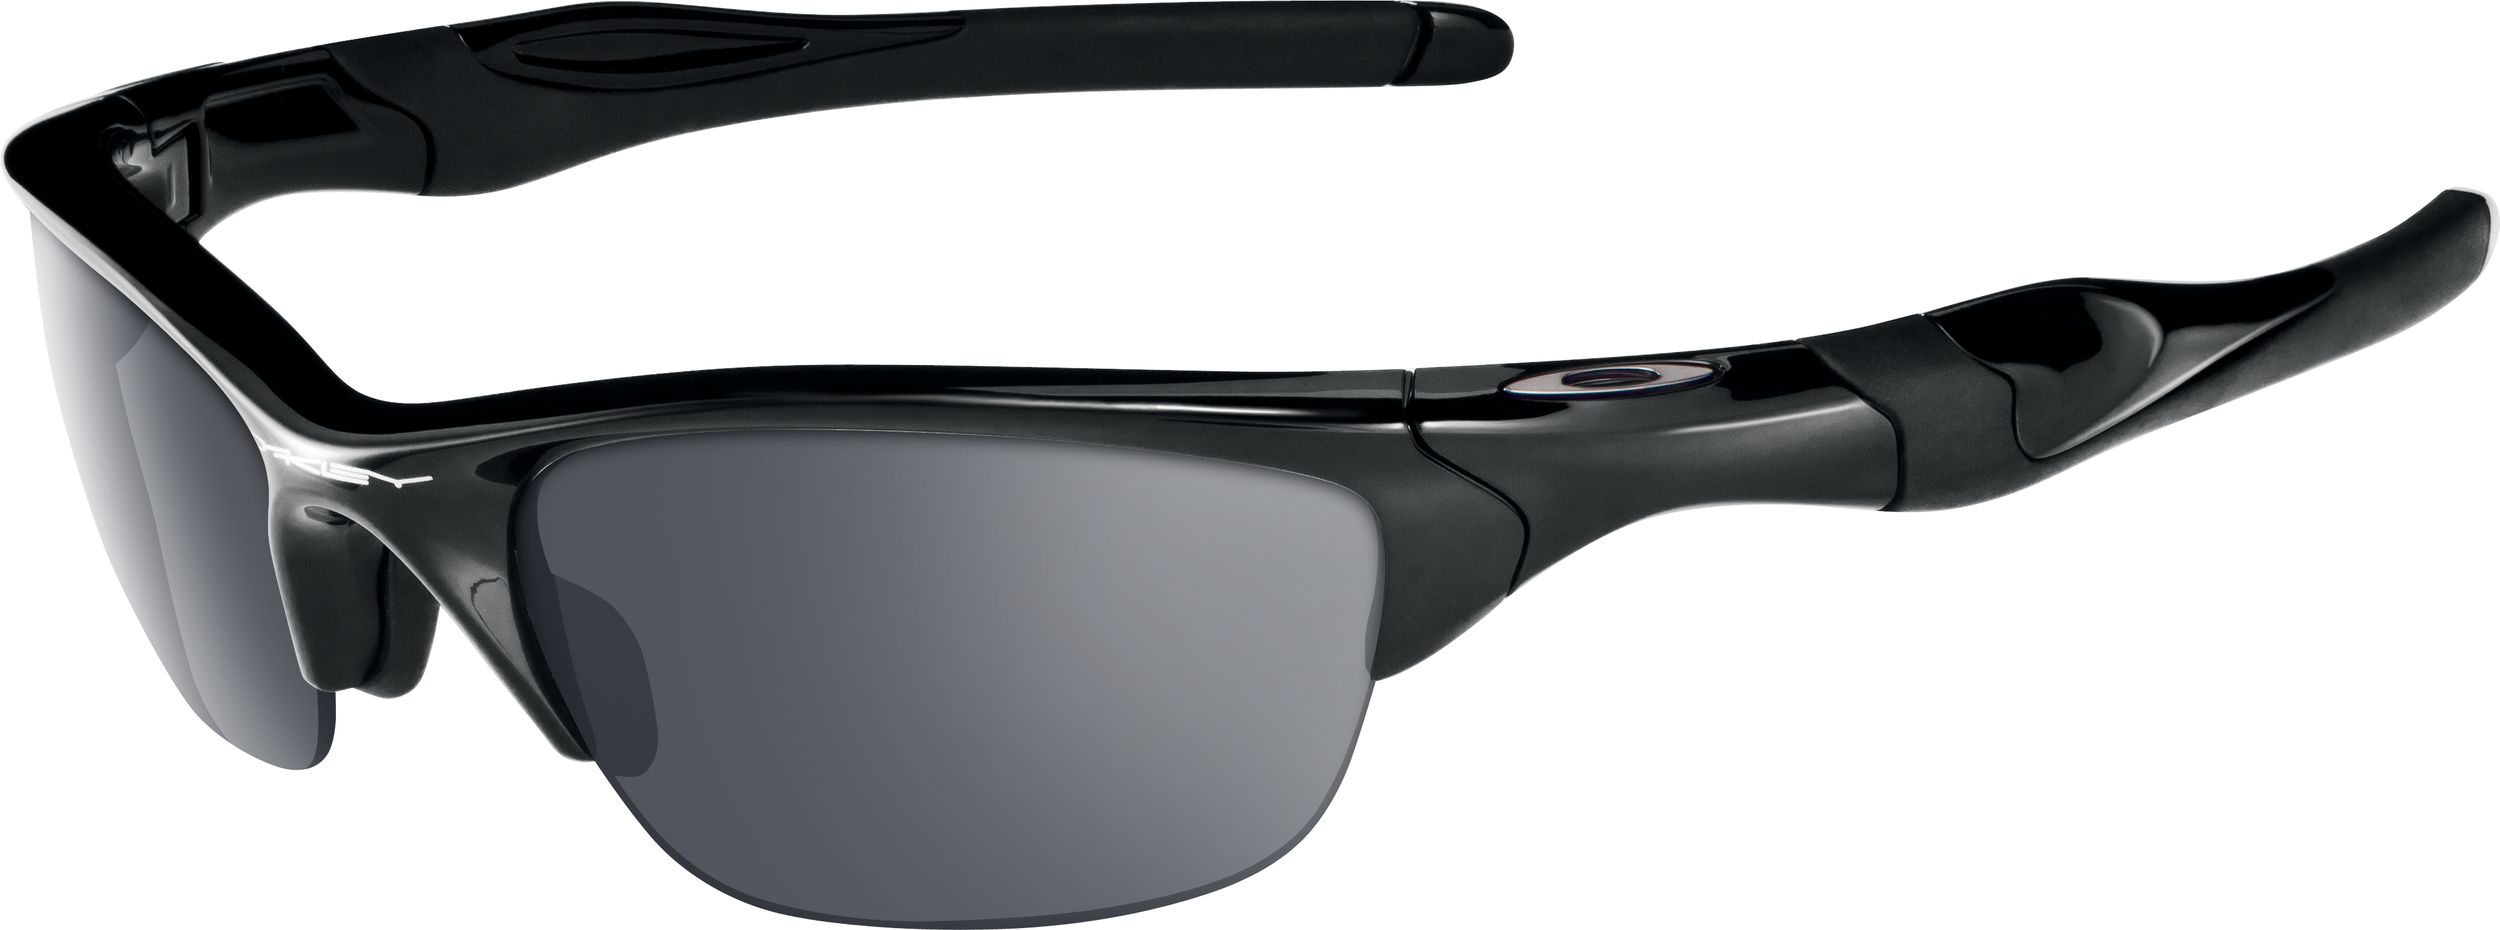 Oakley Men's/Women's Half Jacket 2.0 Sport Sunglasses, Anti-Reflective